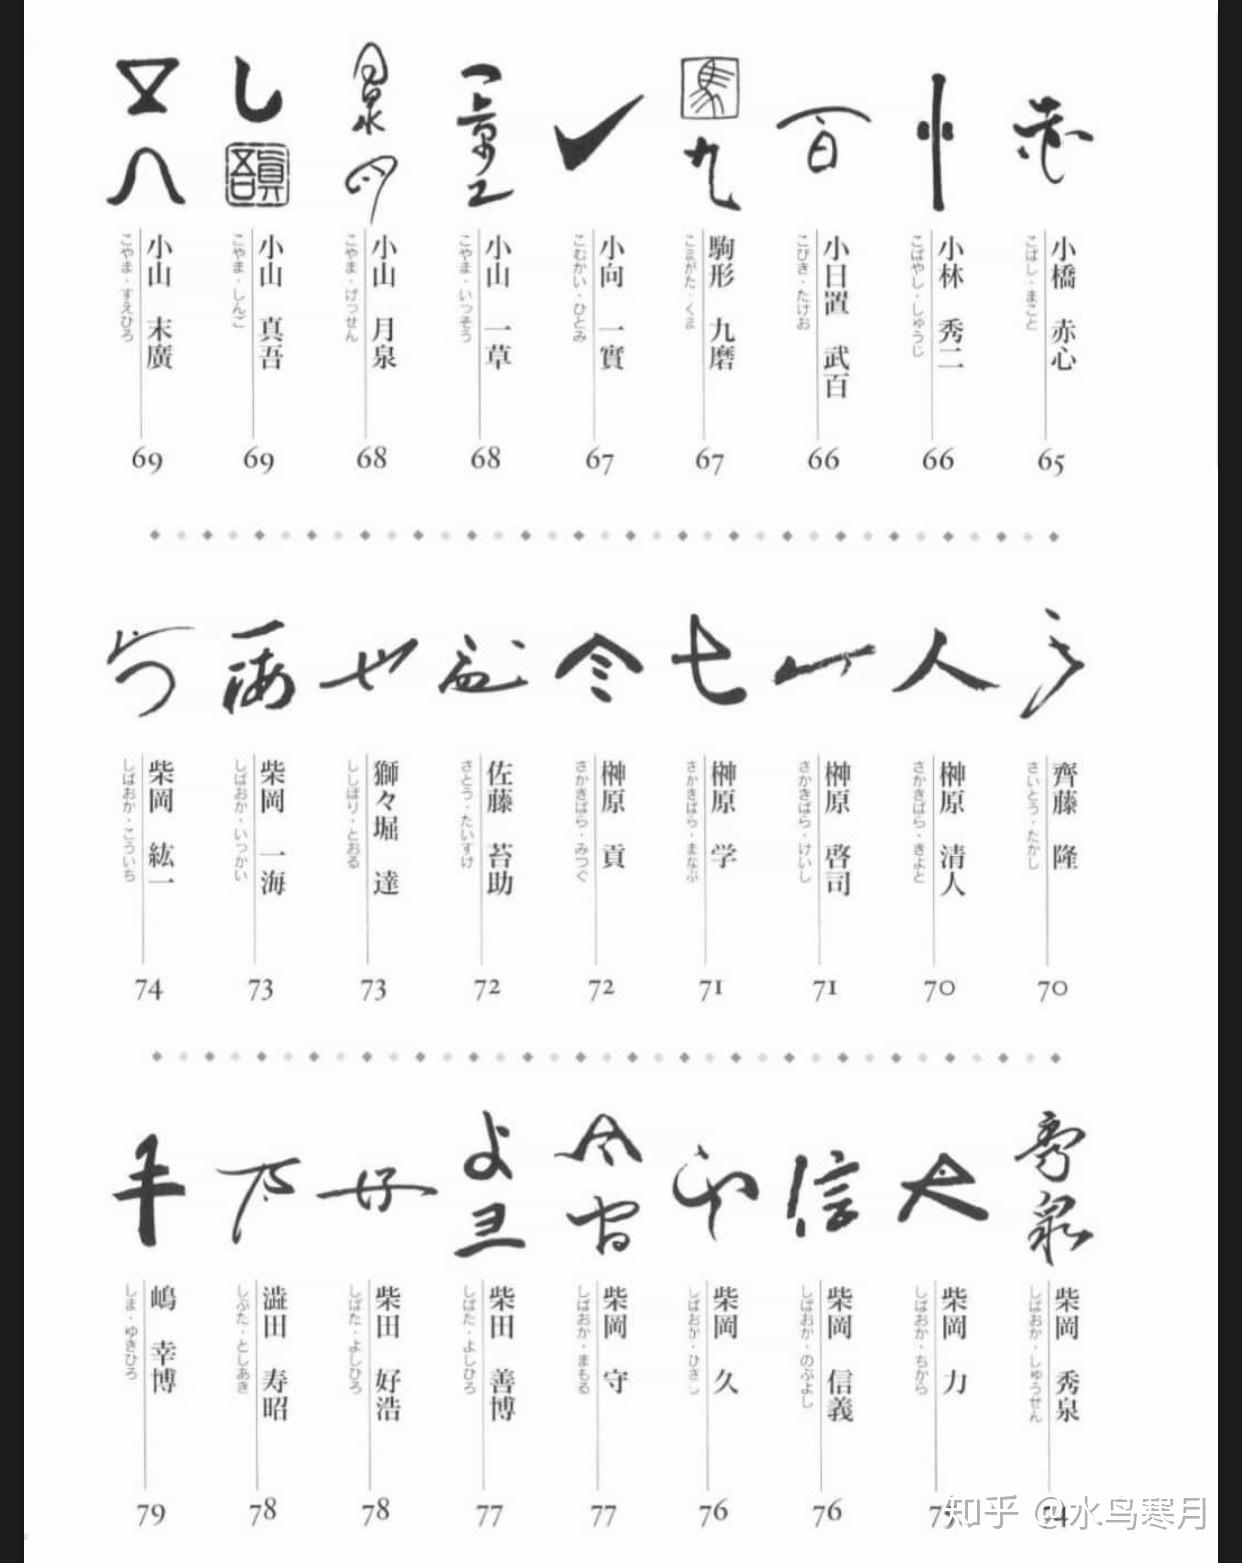 日本六大古窑备前烧5窑印陶印画押二作家窑元篇